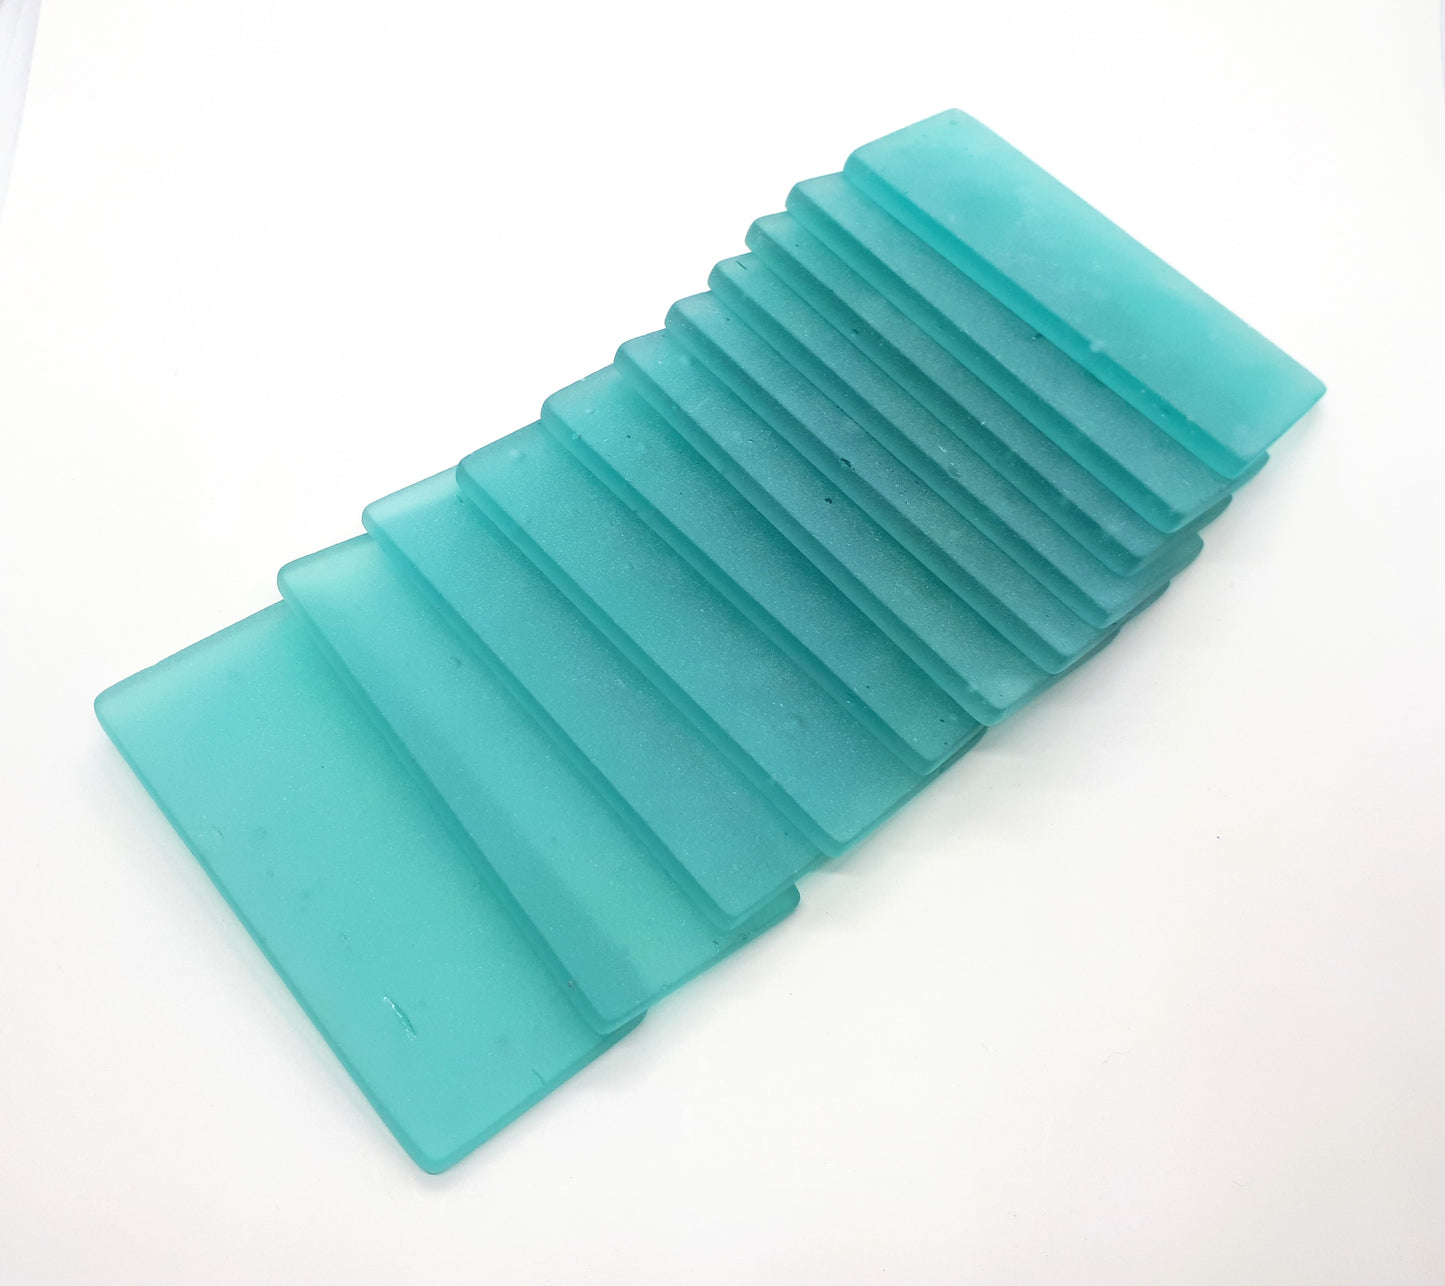 Teal sea glass place cards - Set of 20 rectangular tiles